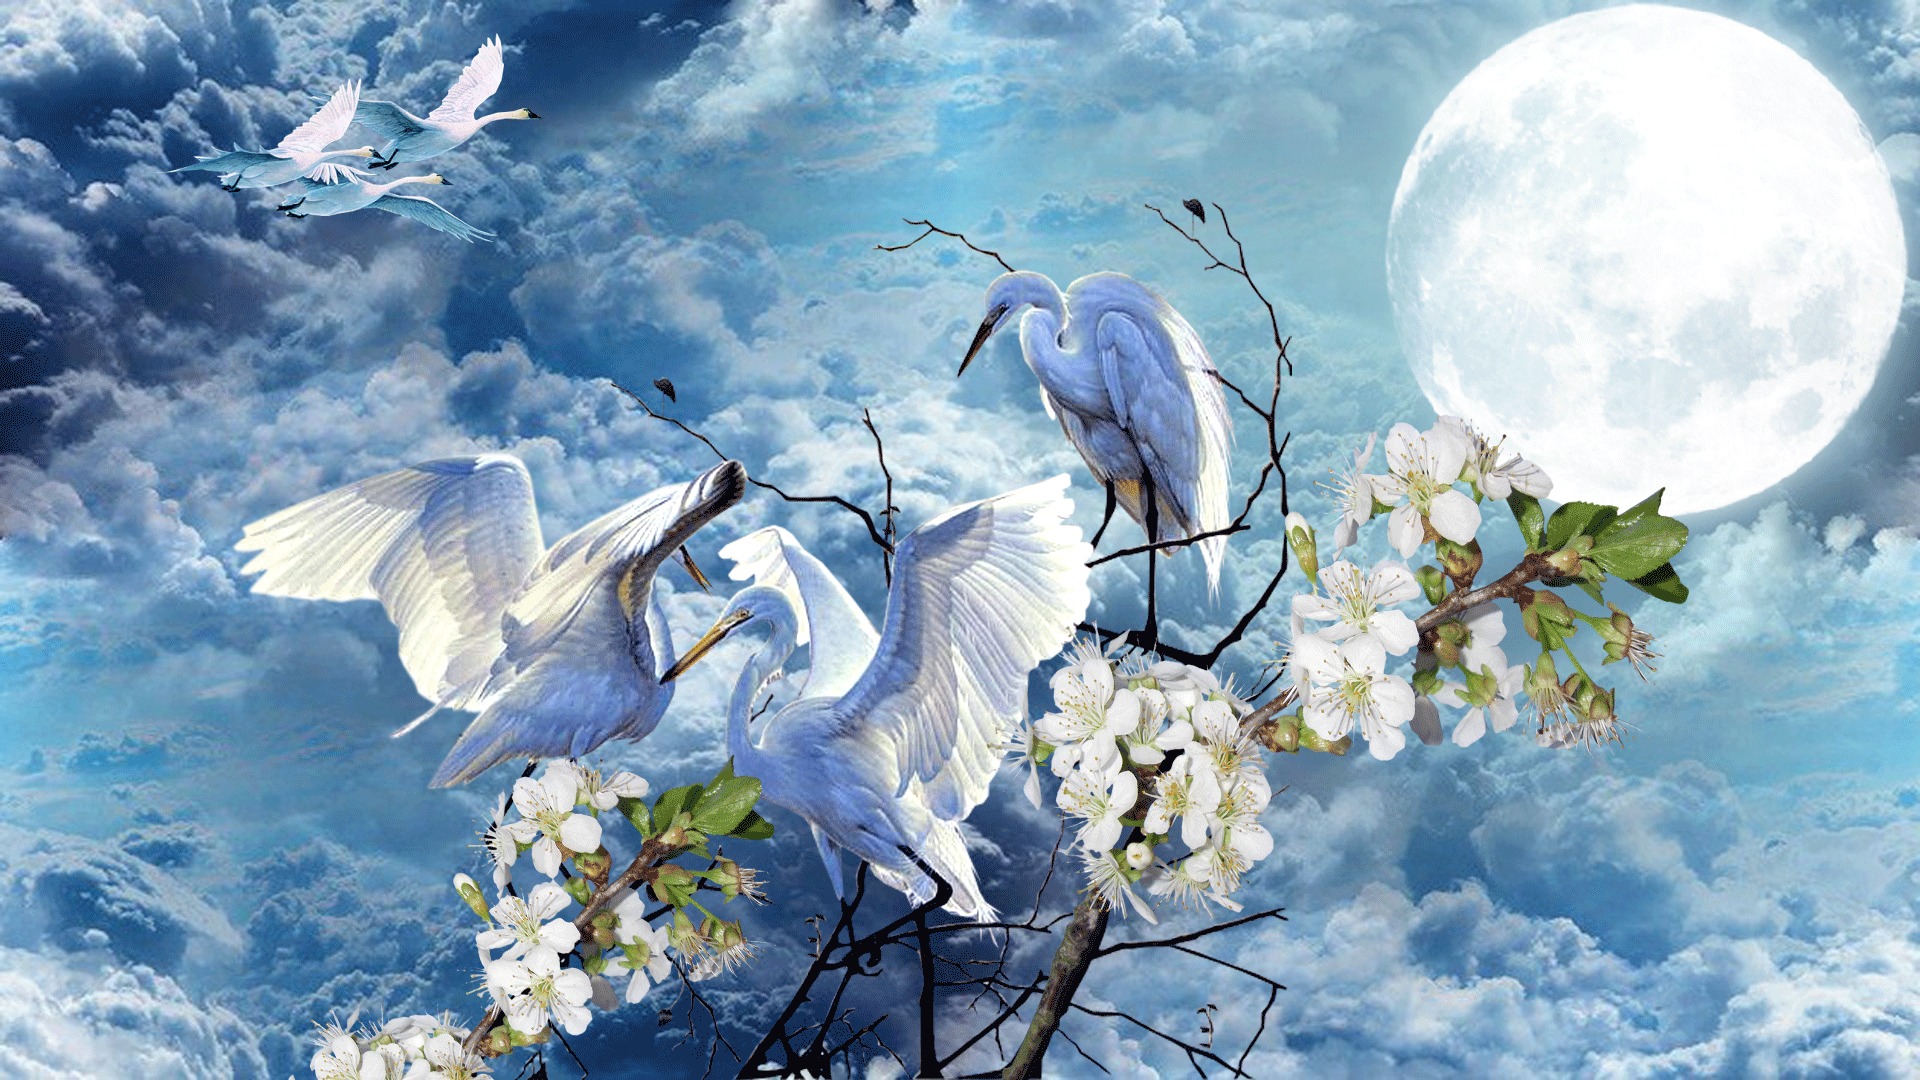 Чудесны лунные мартовские ночи впр 5. Весеннее небо с птицами. Весенний полет. Голубое Весеннее небо и птицы. Птицы в небе весной.